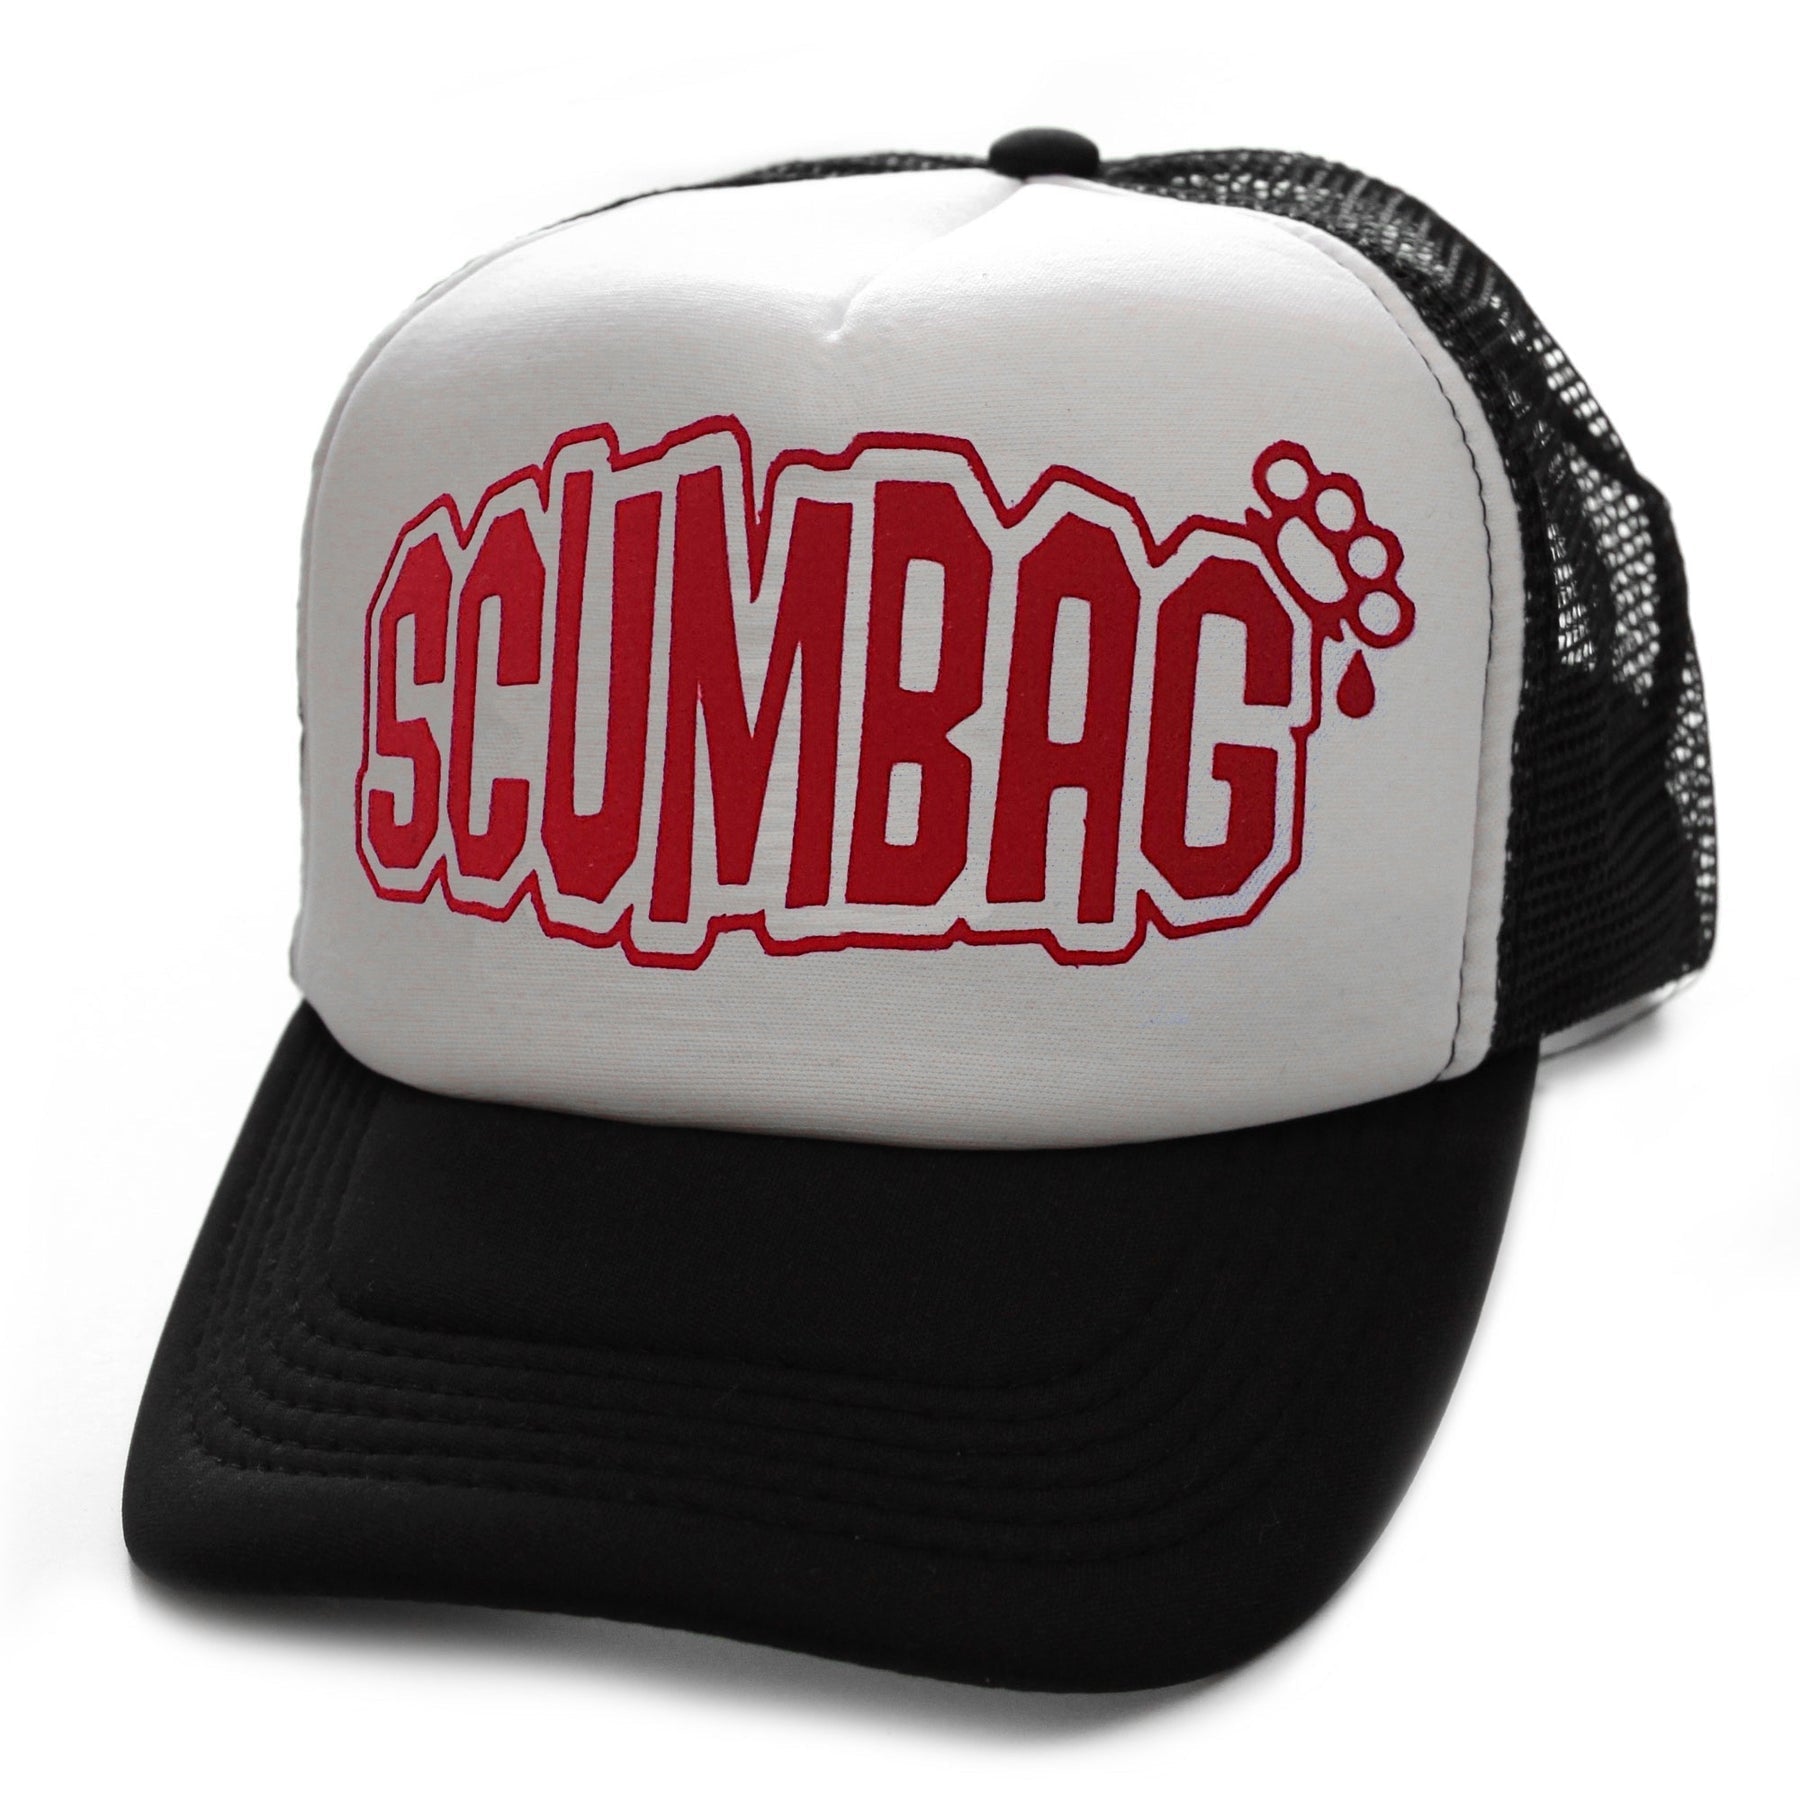 Scumbag Snapback Trucker Cap-Mens Beanies, Hats & Snapback Caps-Scarlett Dawn